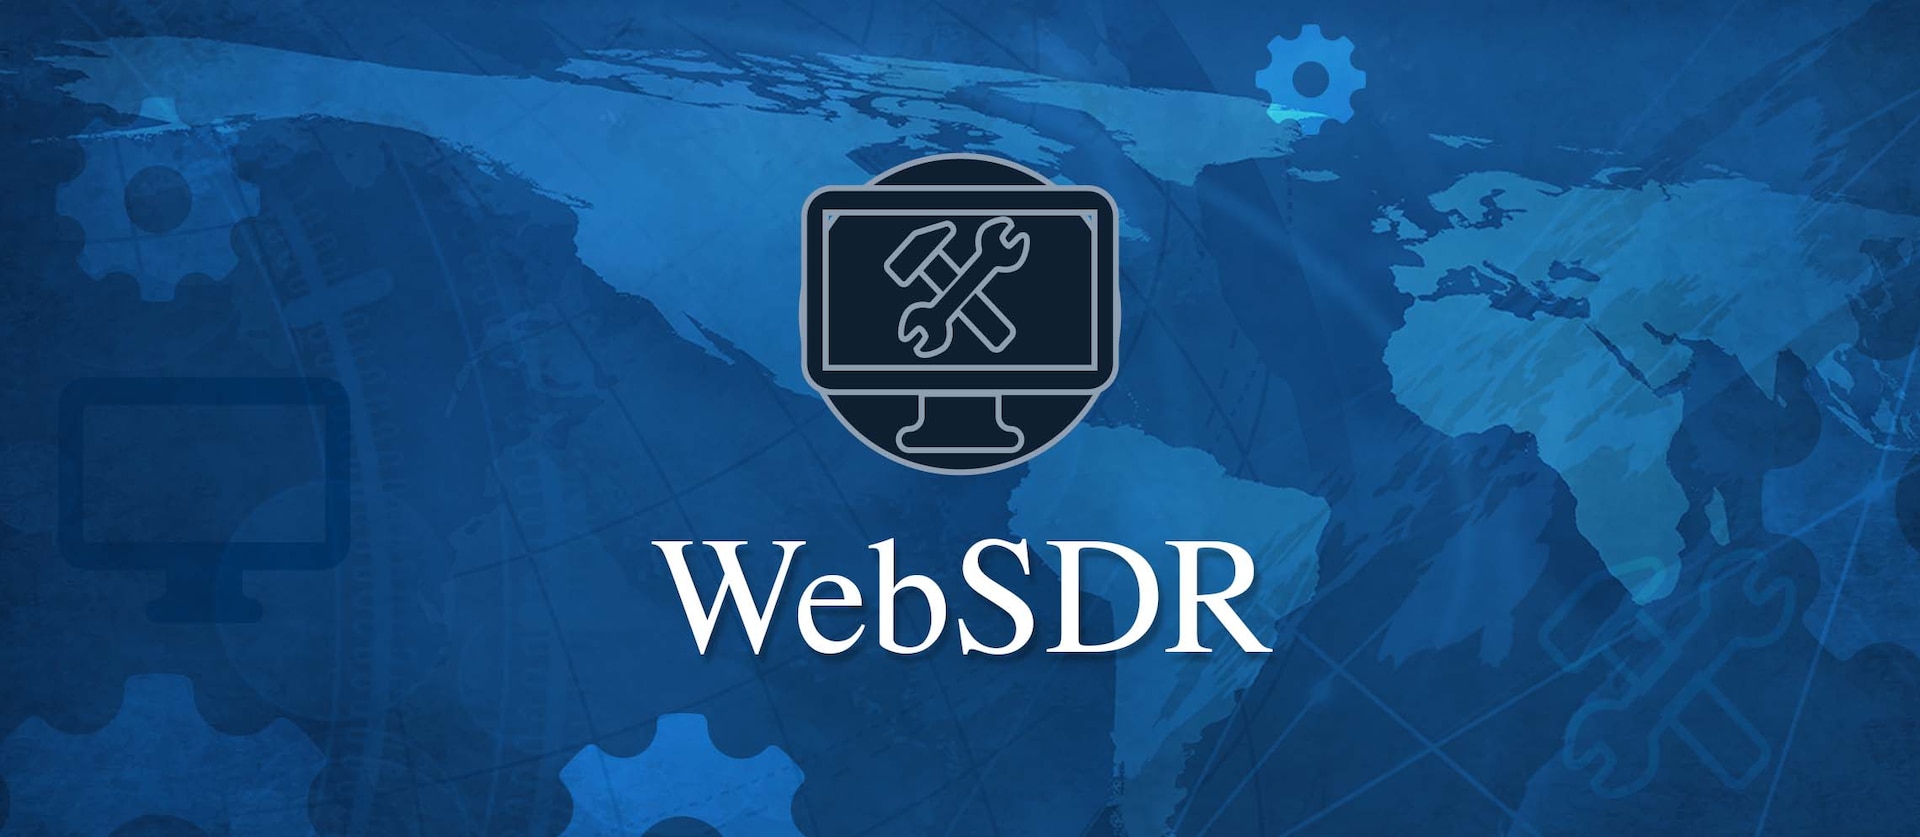 Banner for WebSDR application